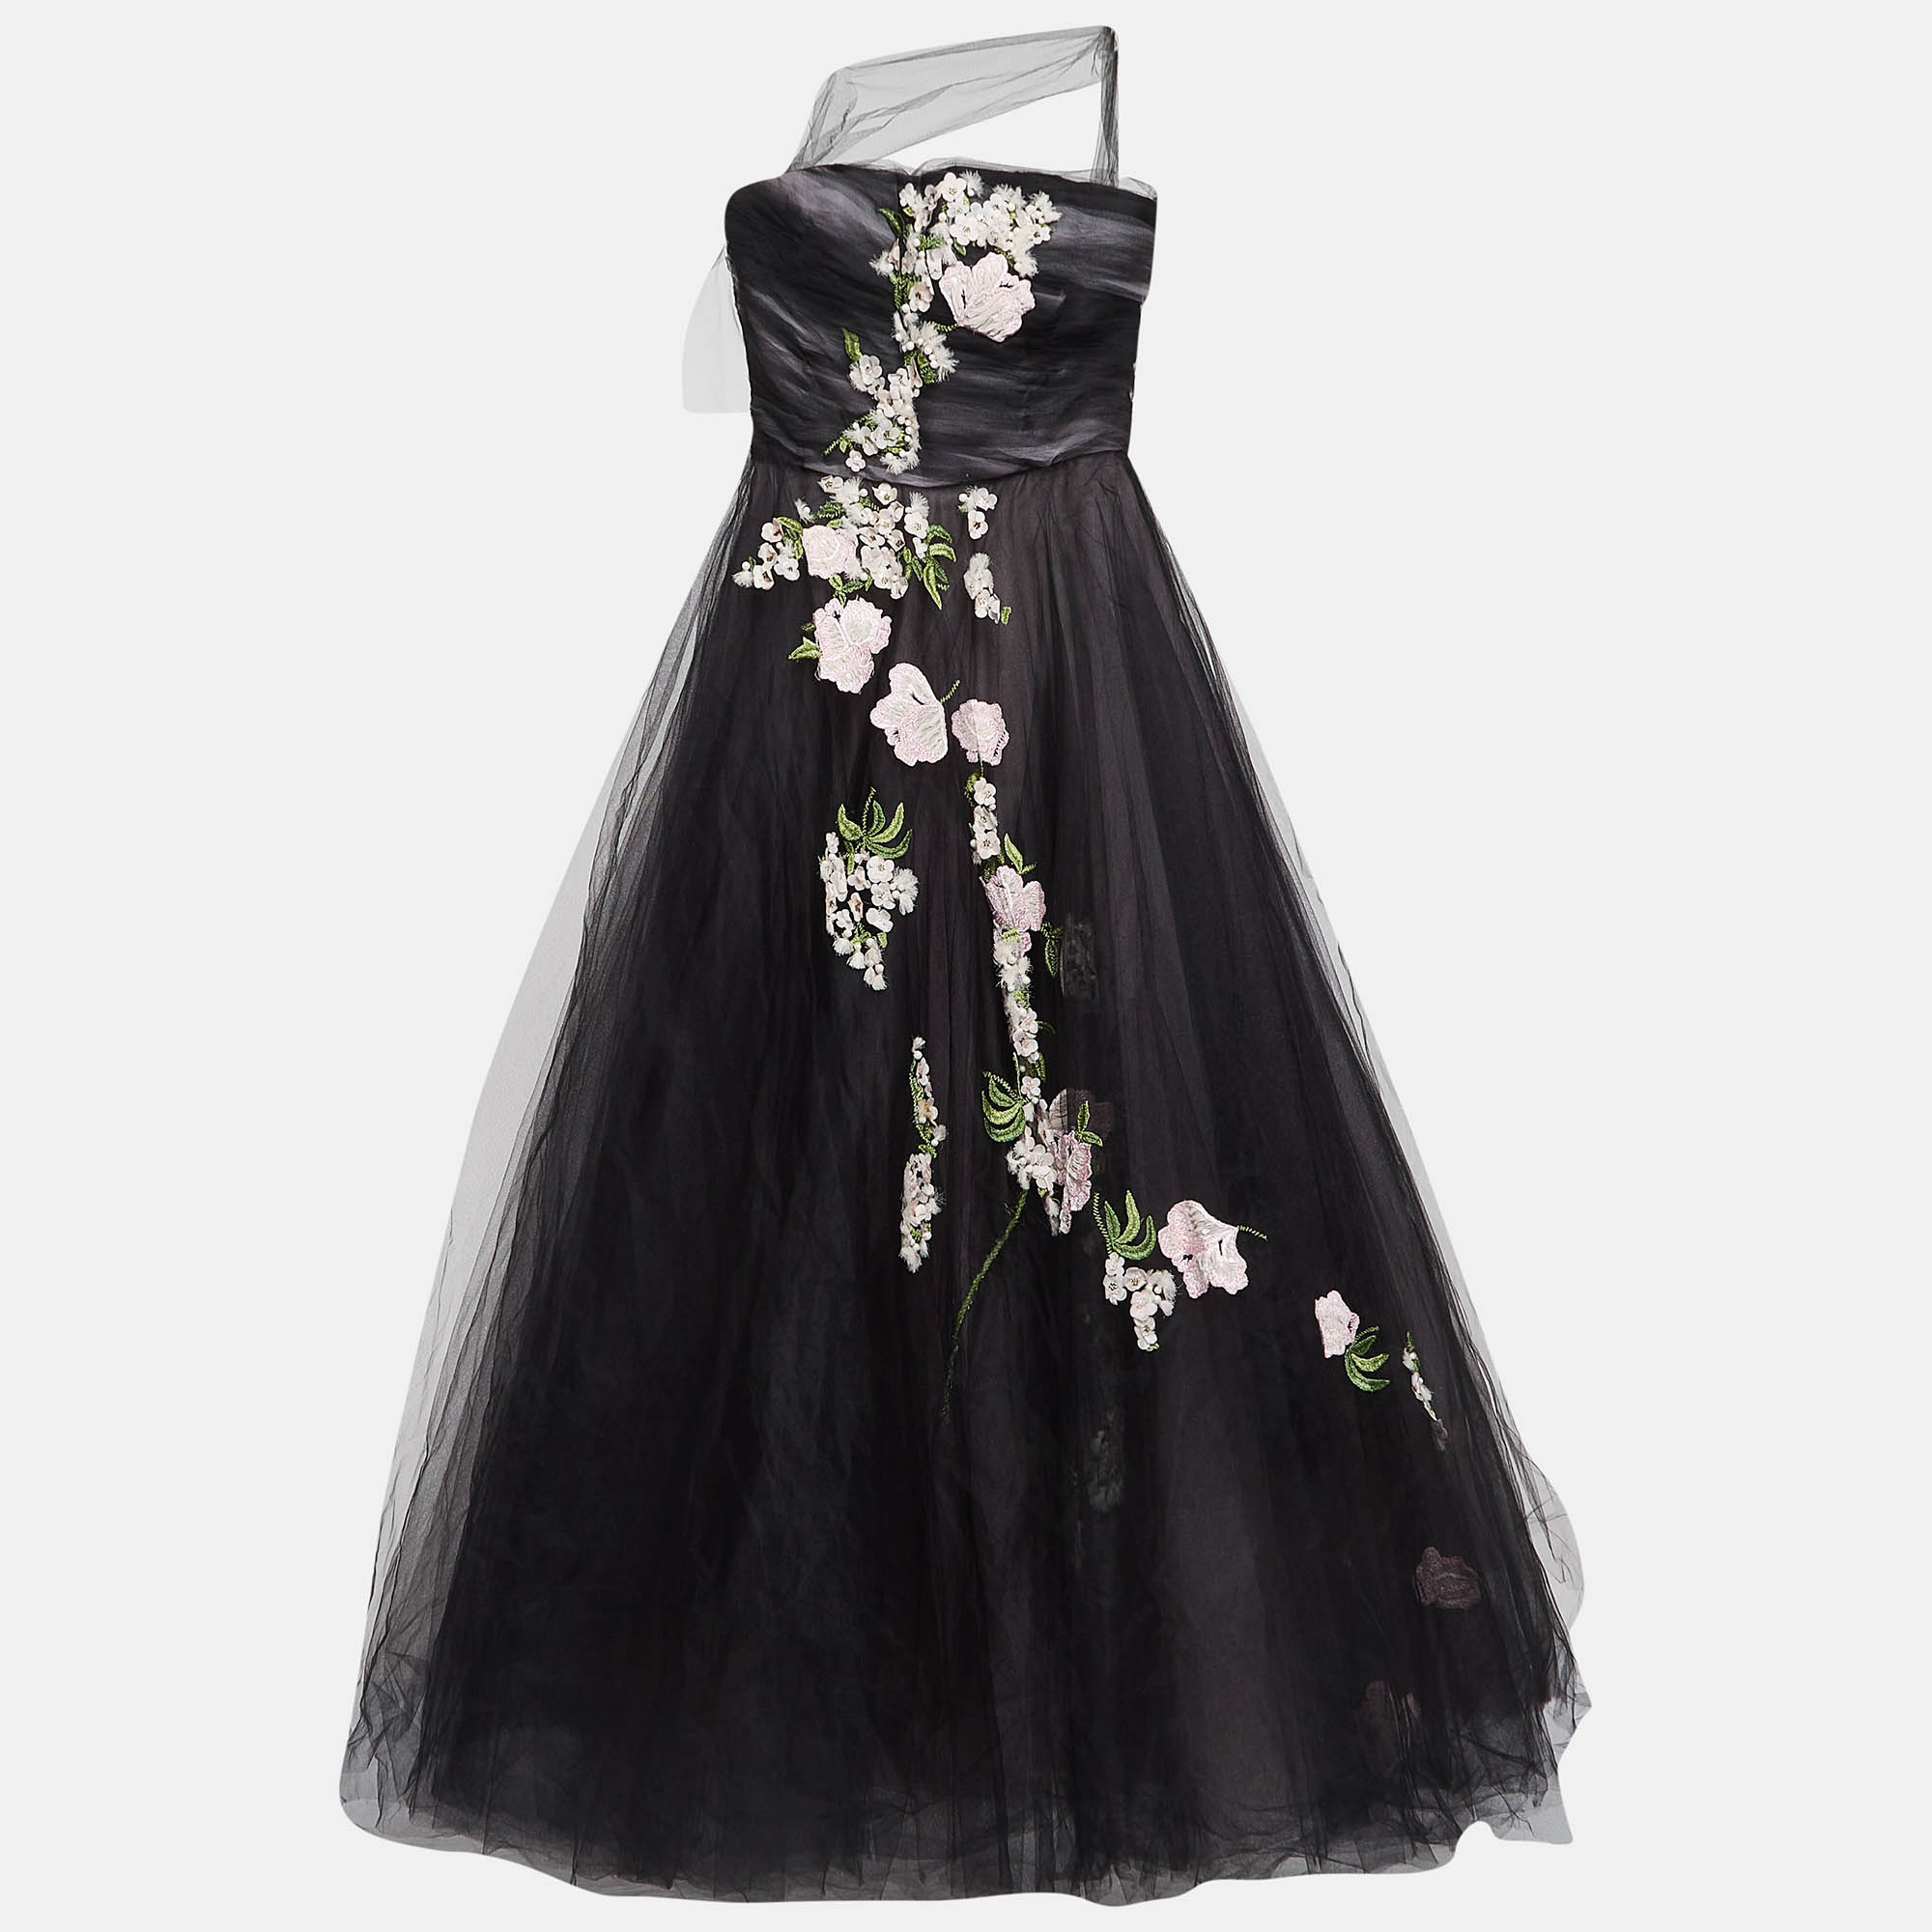 

Oscar de la Renta Black Floral Embroidered and Appliqued Tulle Halter Neck Gown